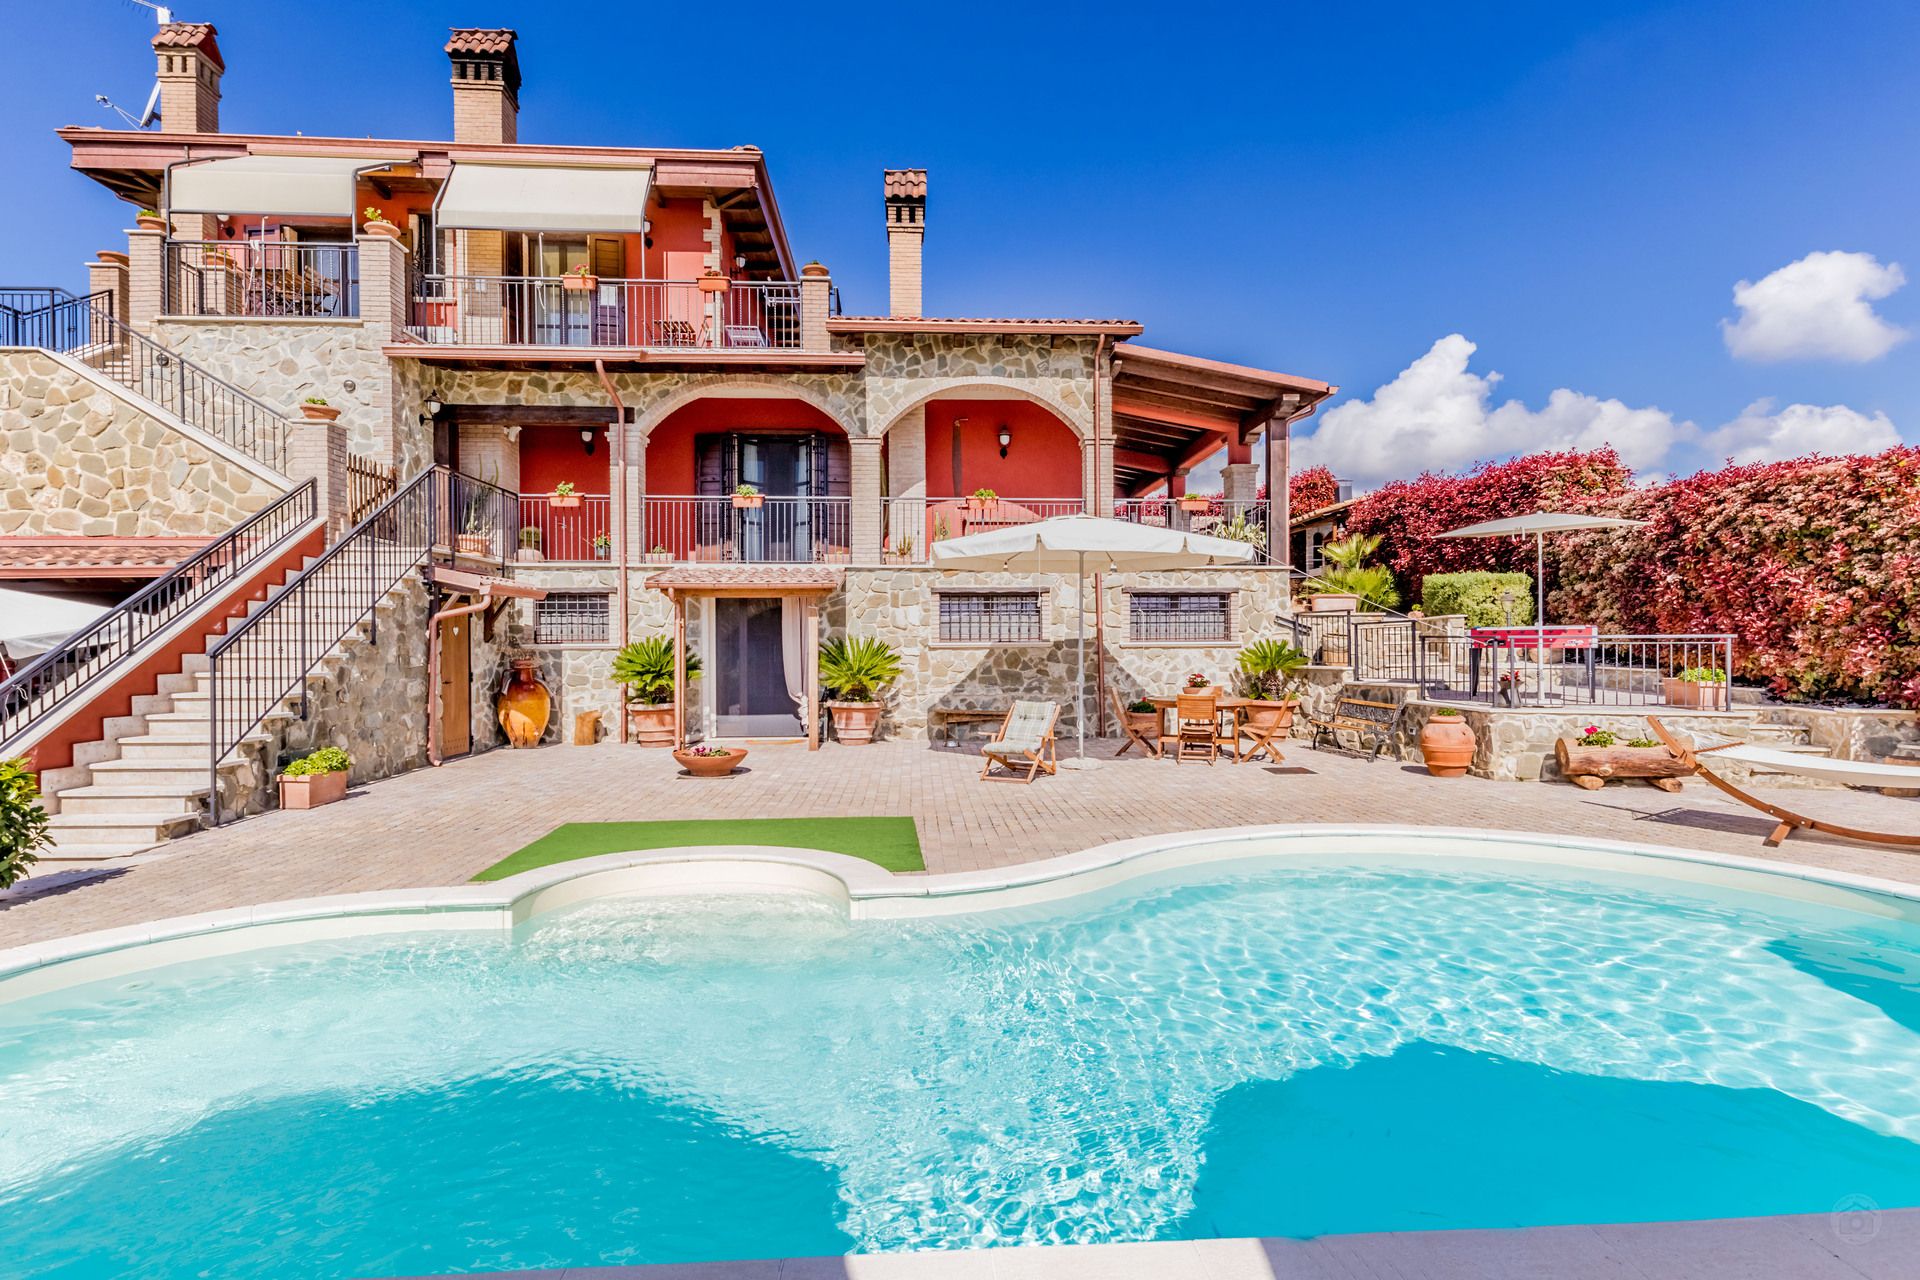 A vendre villa in zone tranquille Guidonia Montecelio Lazio